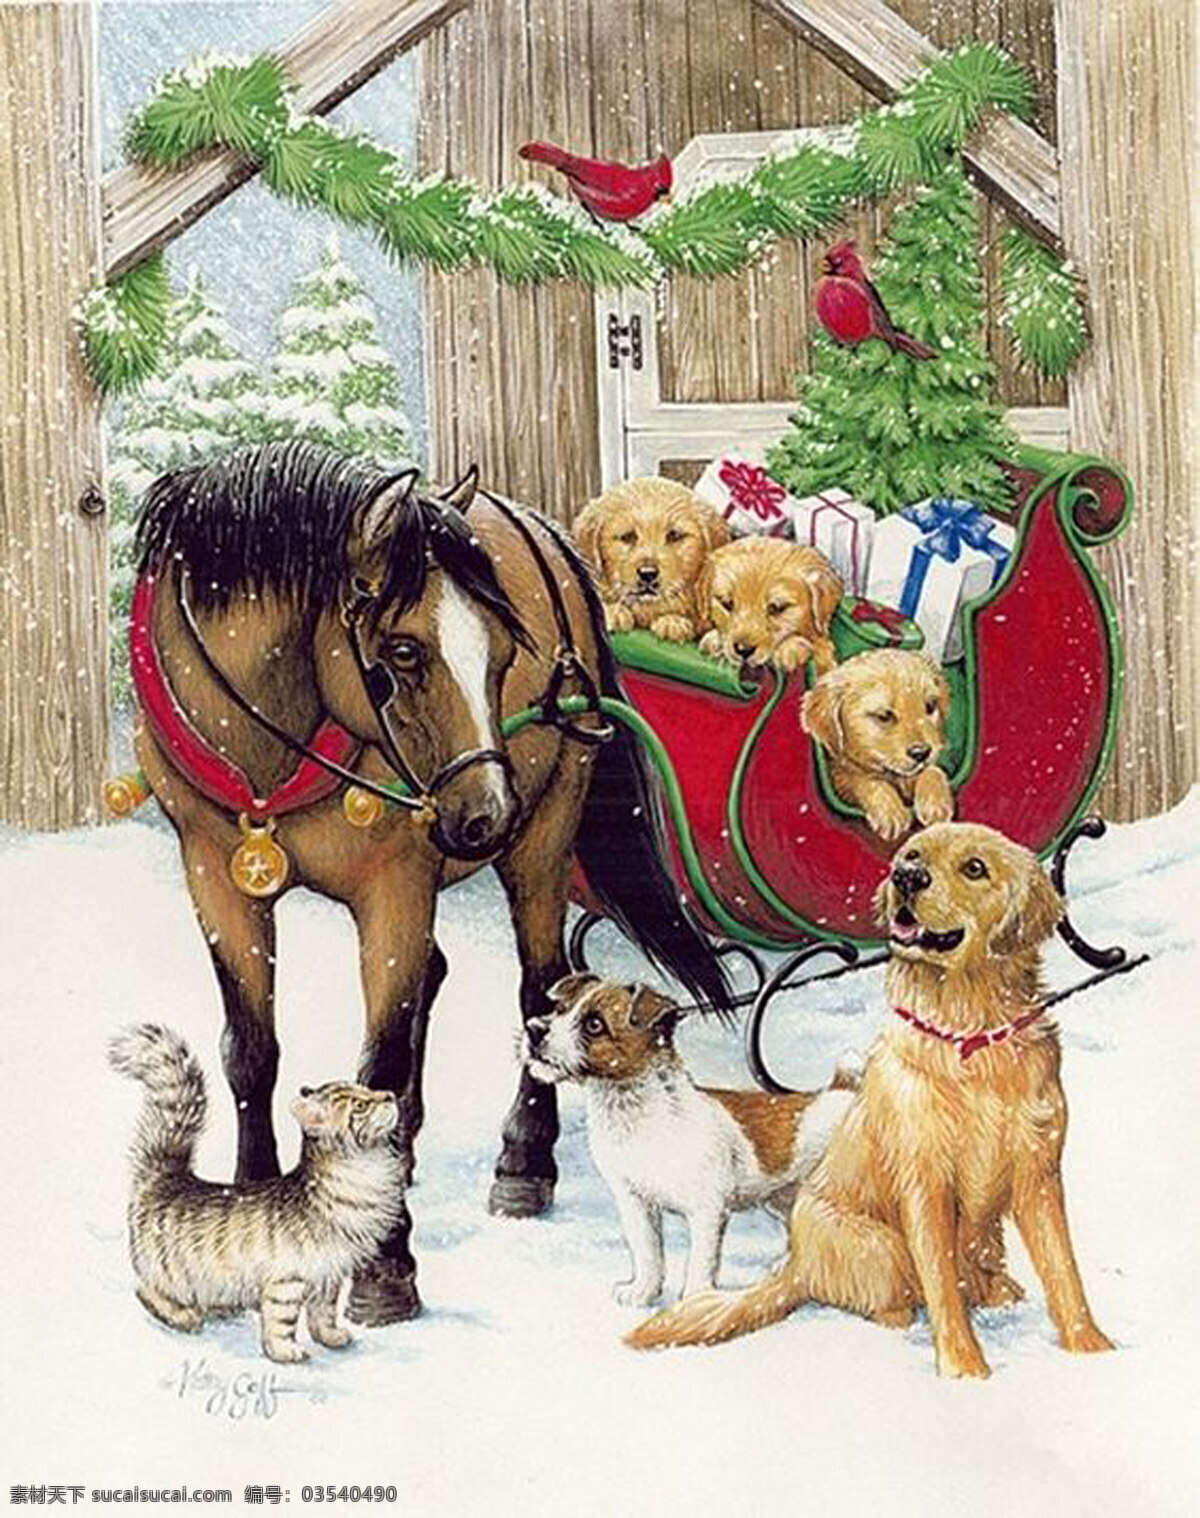 宝马拉金毛 冬天里的宝马 宝马拉车 圣诞车 金毛 犬 小狗 雪景 自然景观 自然风光